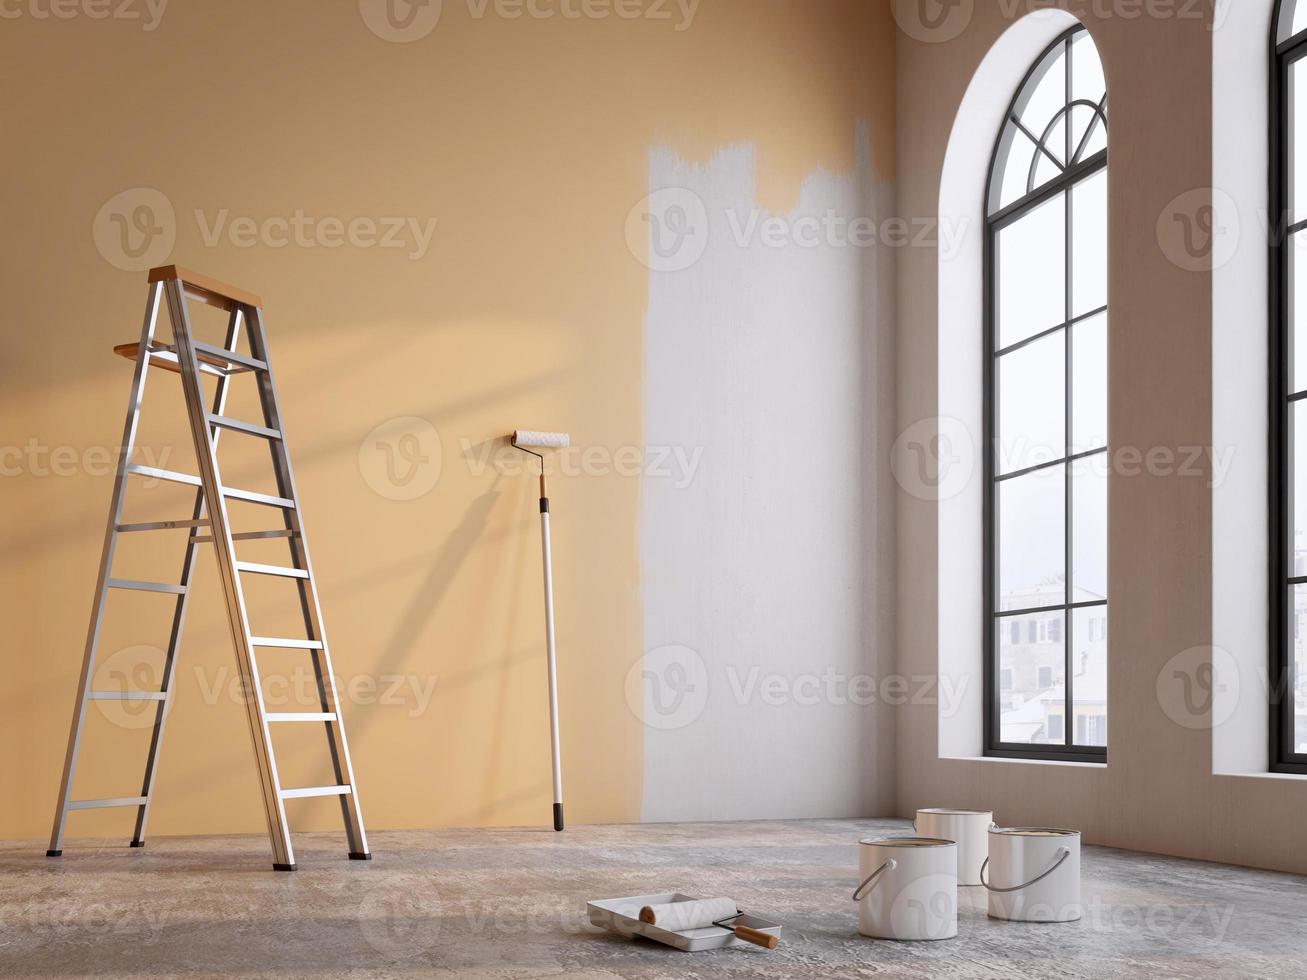 målning tömma rum vägg i brun färg.koncept för Hem renovering.3d tolkning foto